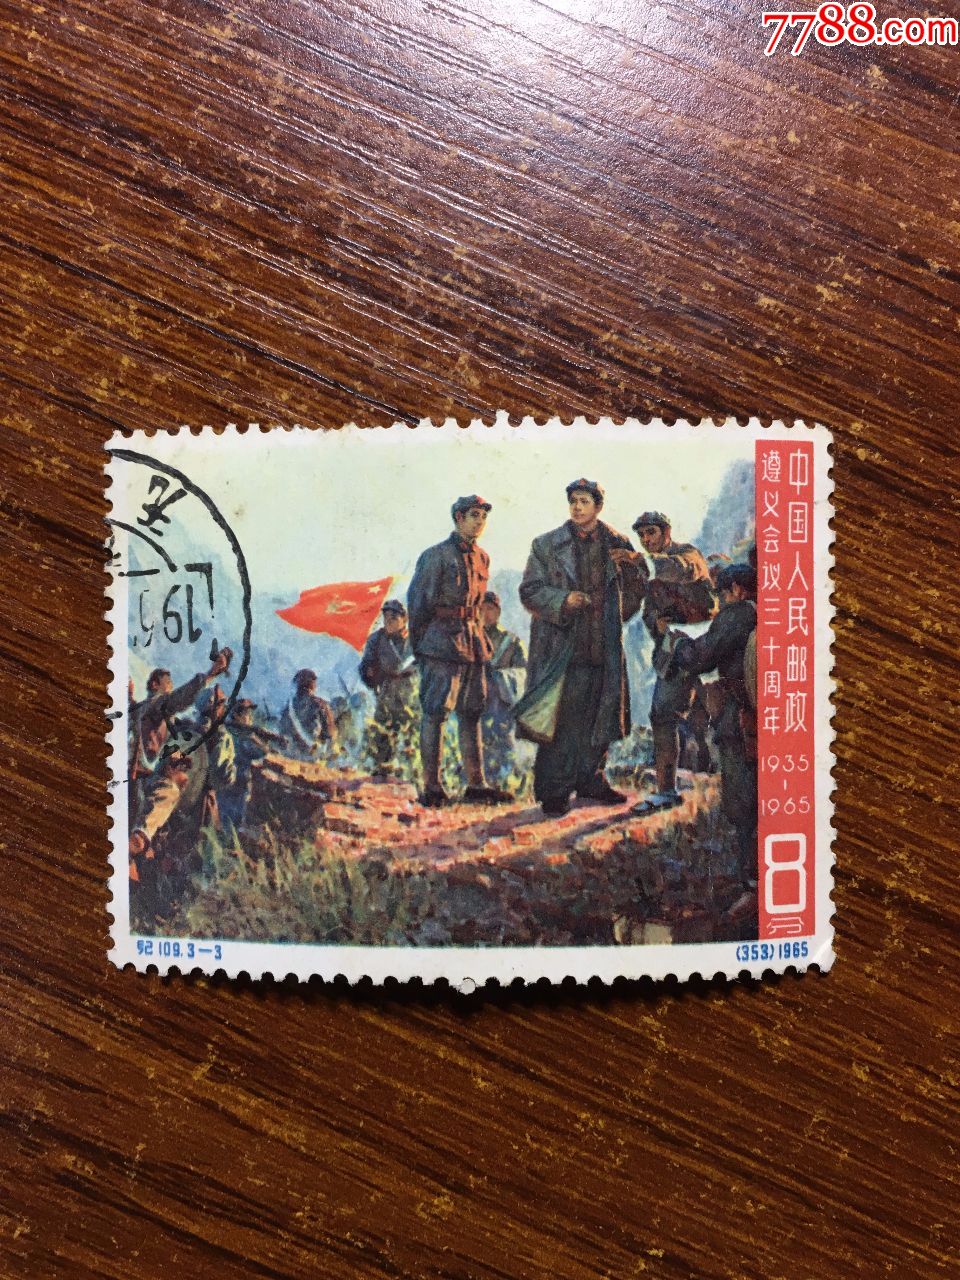 纪109遵义会议三十周年邮票纪109大遵义邮票盖销邮票信销邮票老纪特